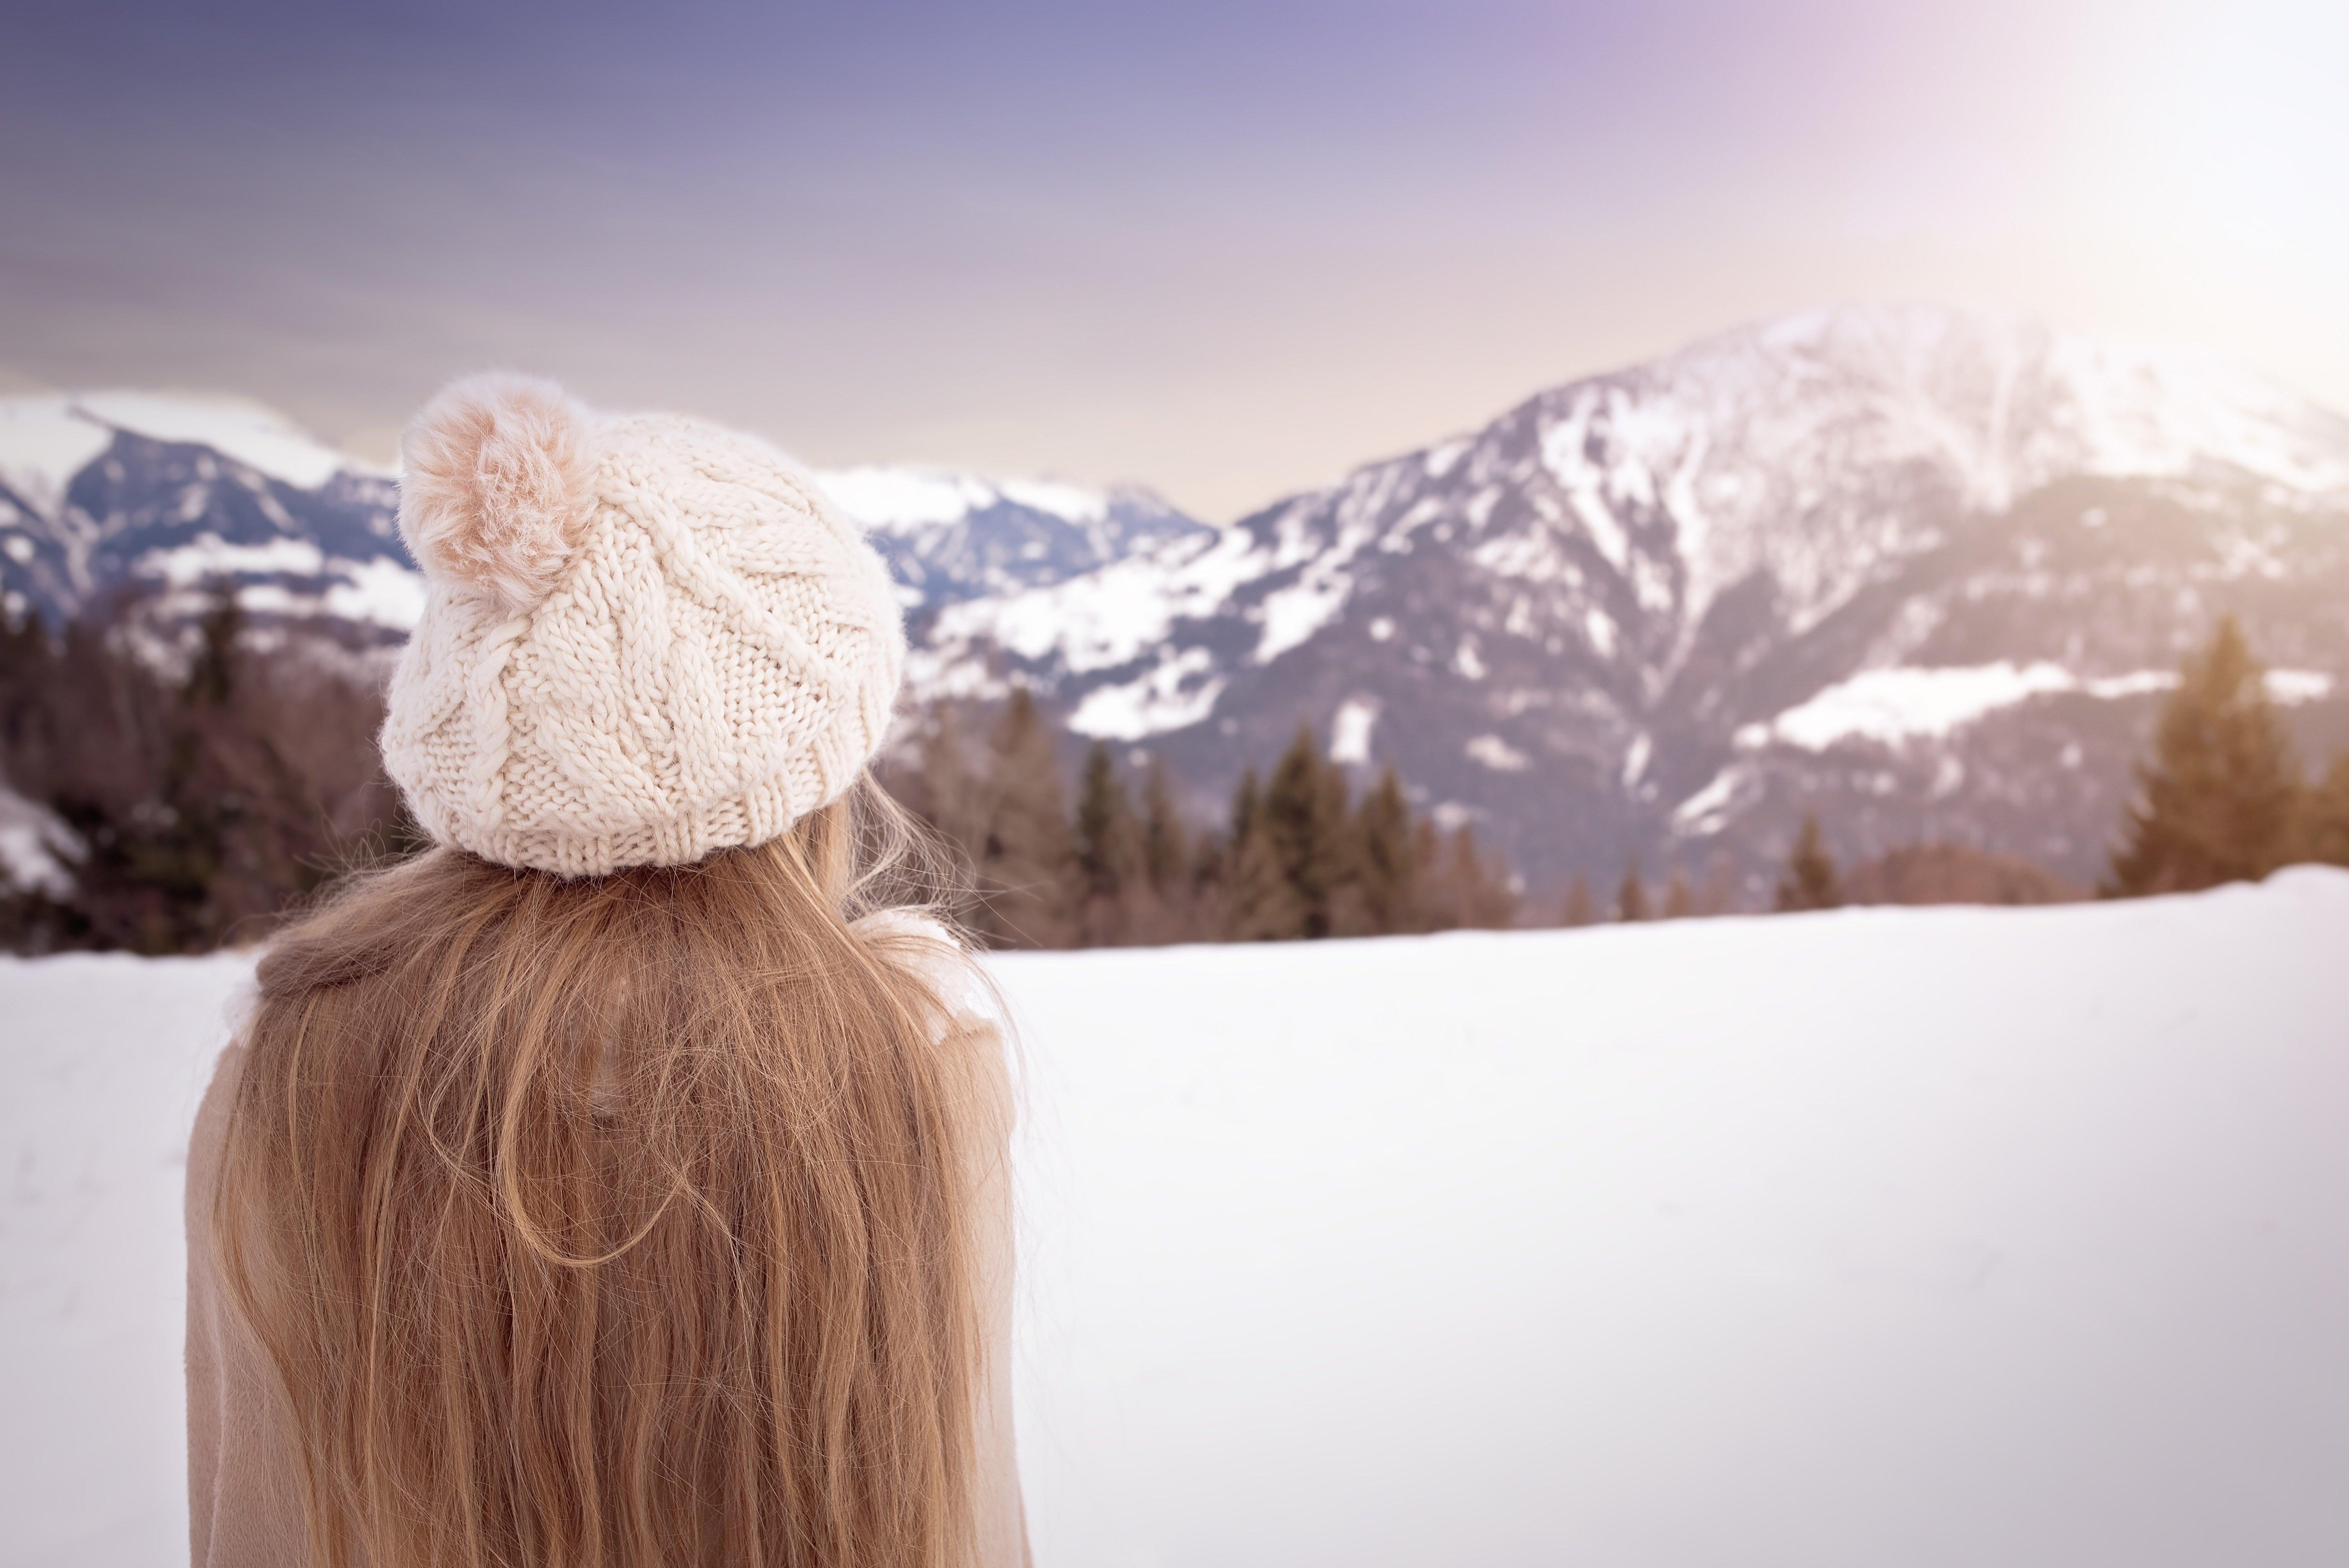 Девочка в зимней одежде смотрит на звёзды — Картинки на аву